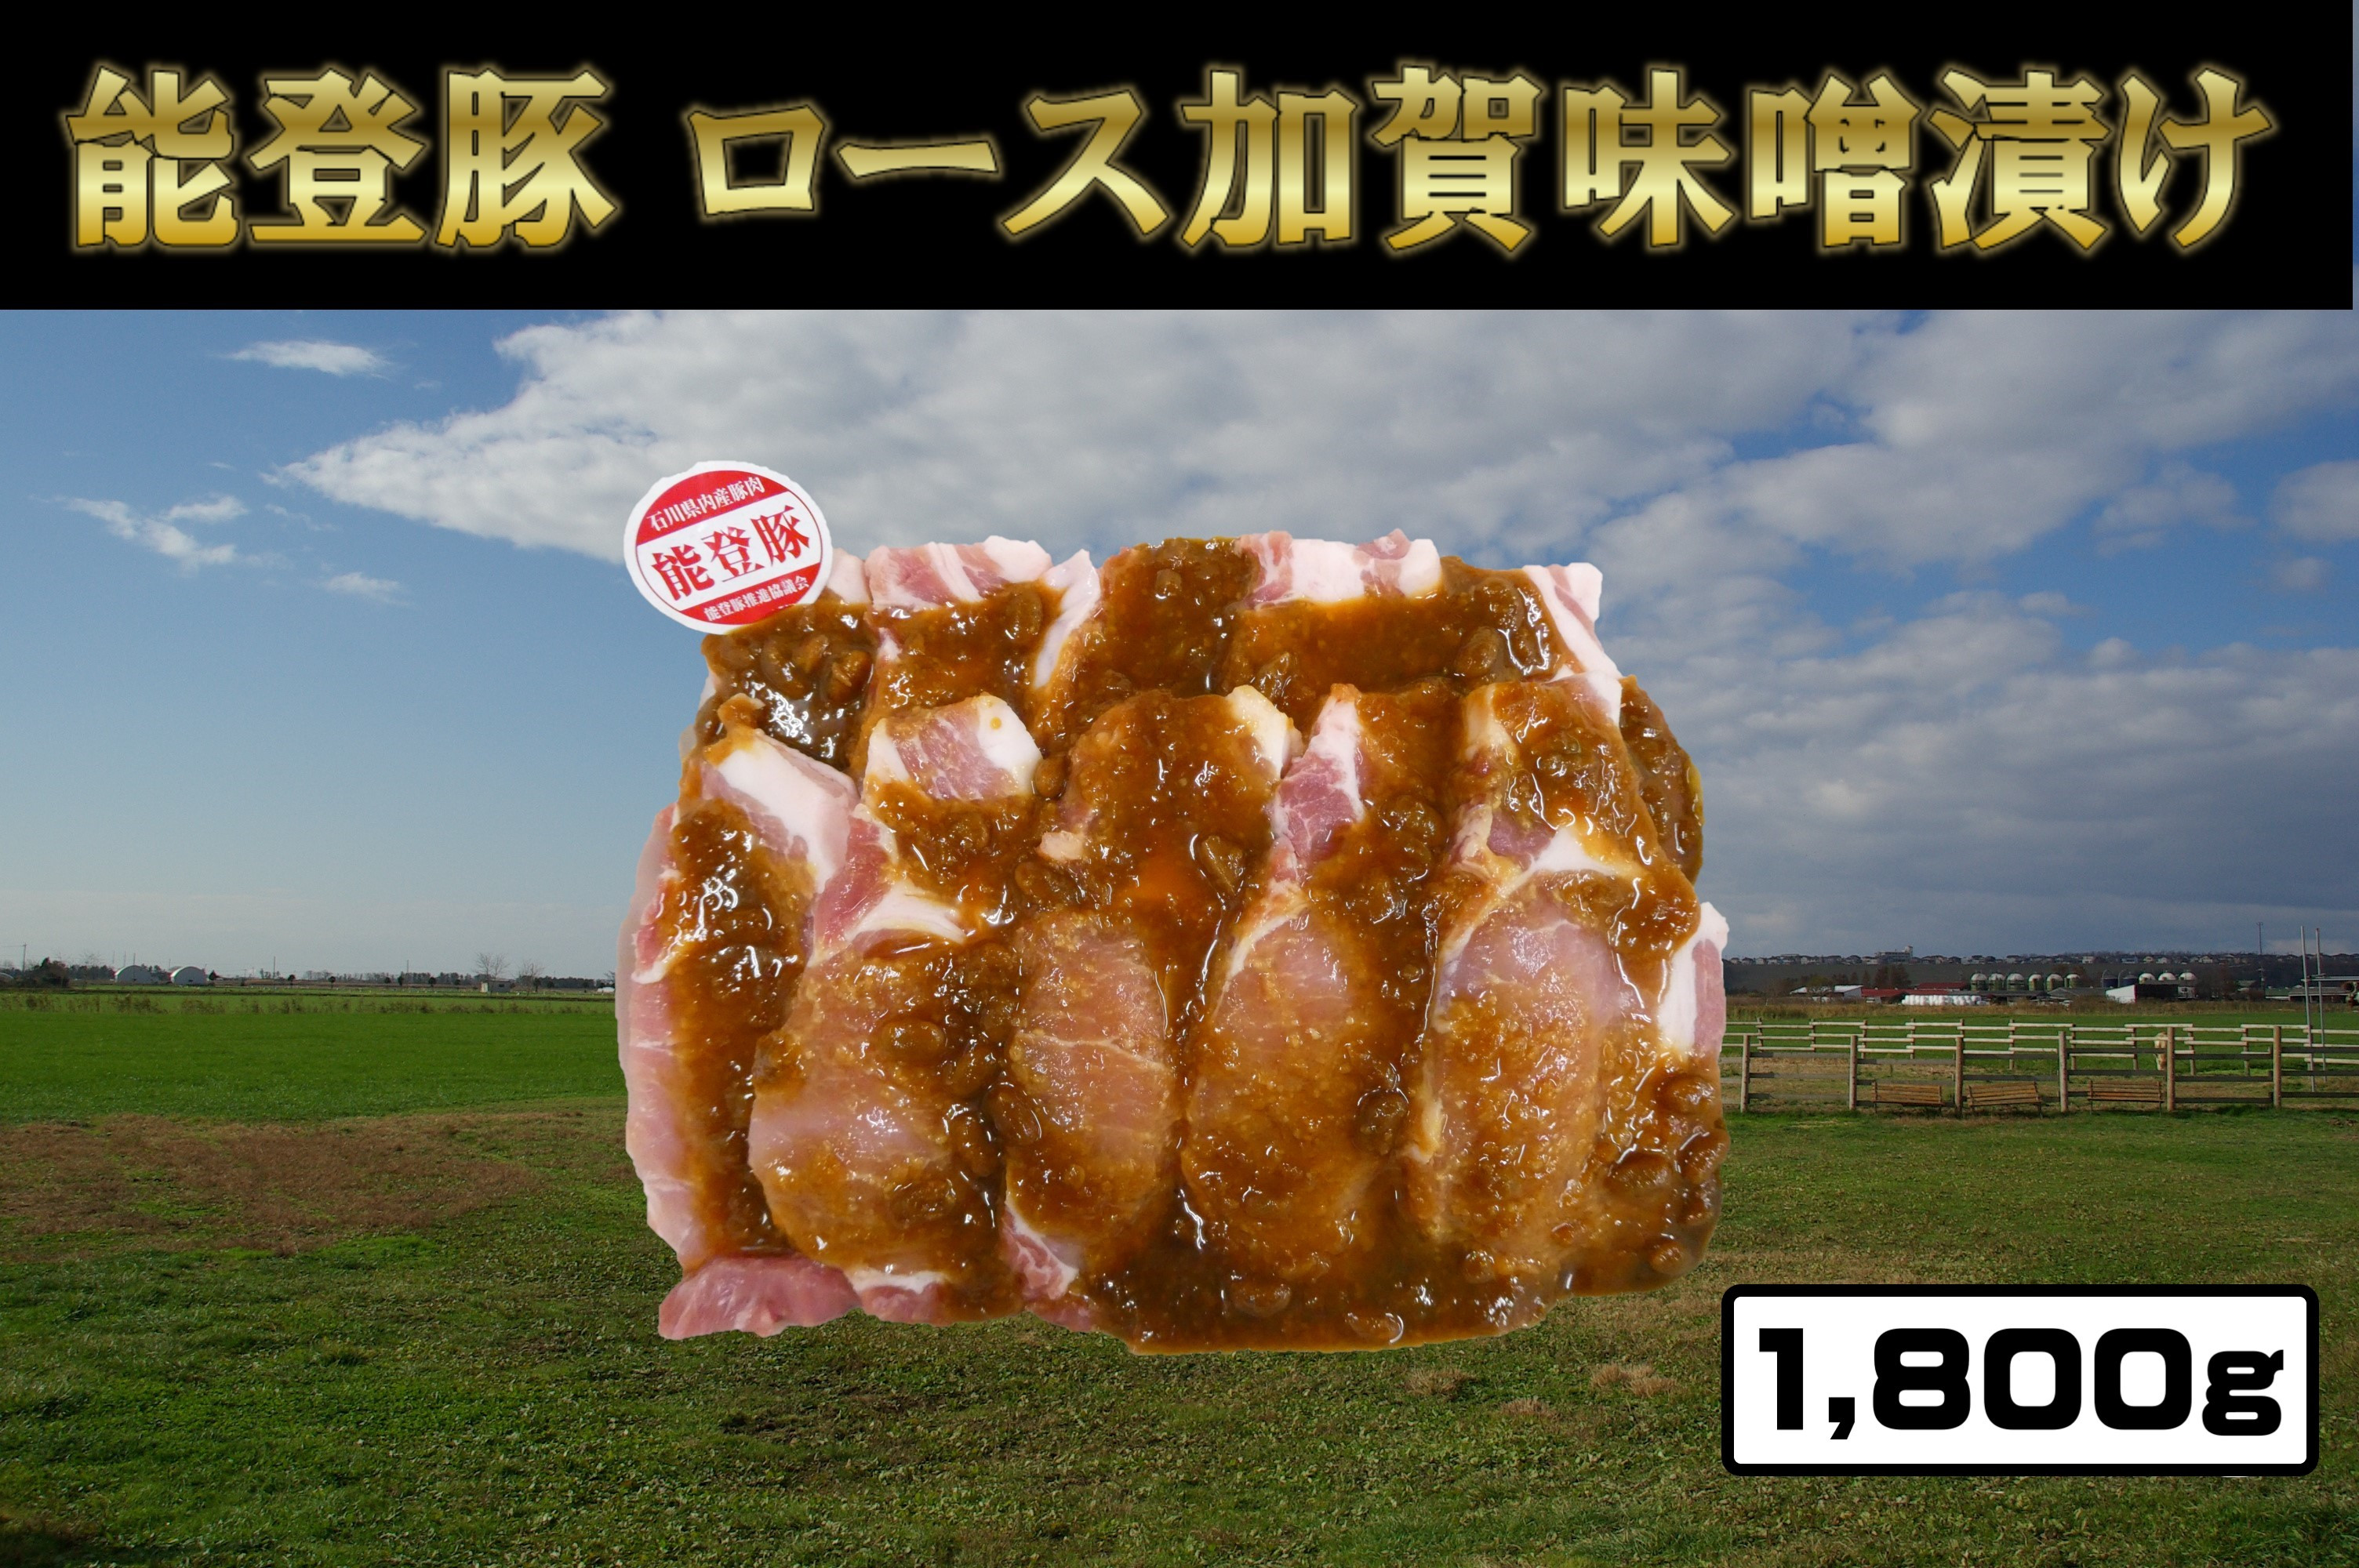 
能登豚ロース加賀味噌漬け1800g
